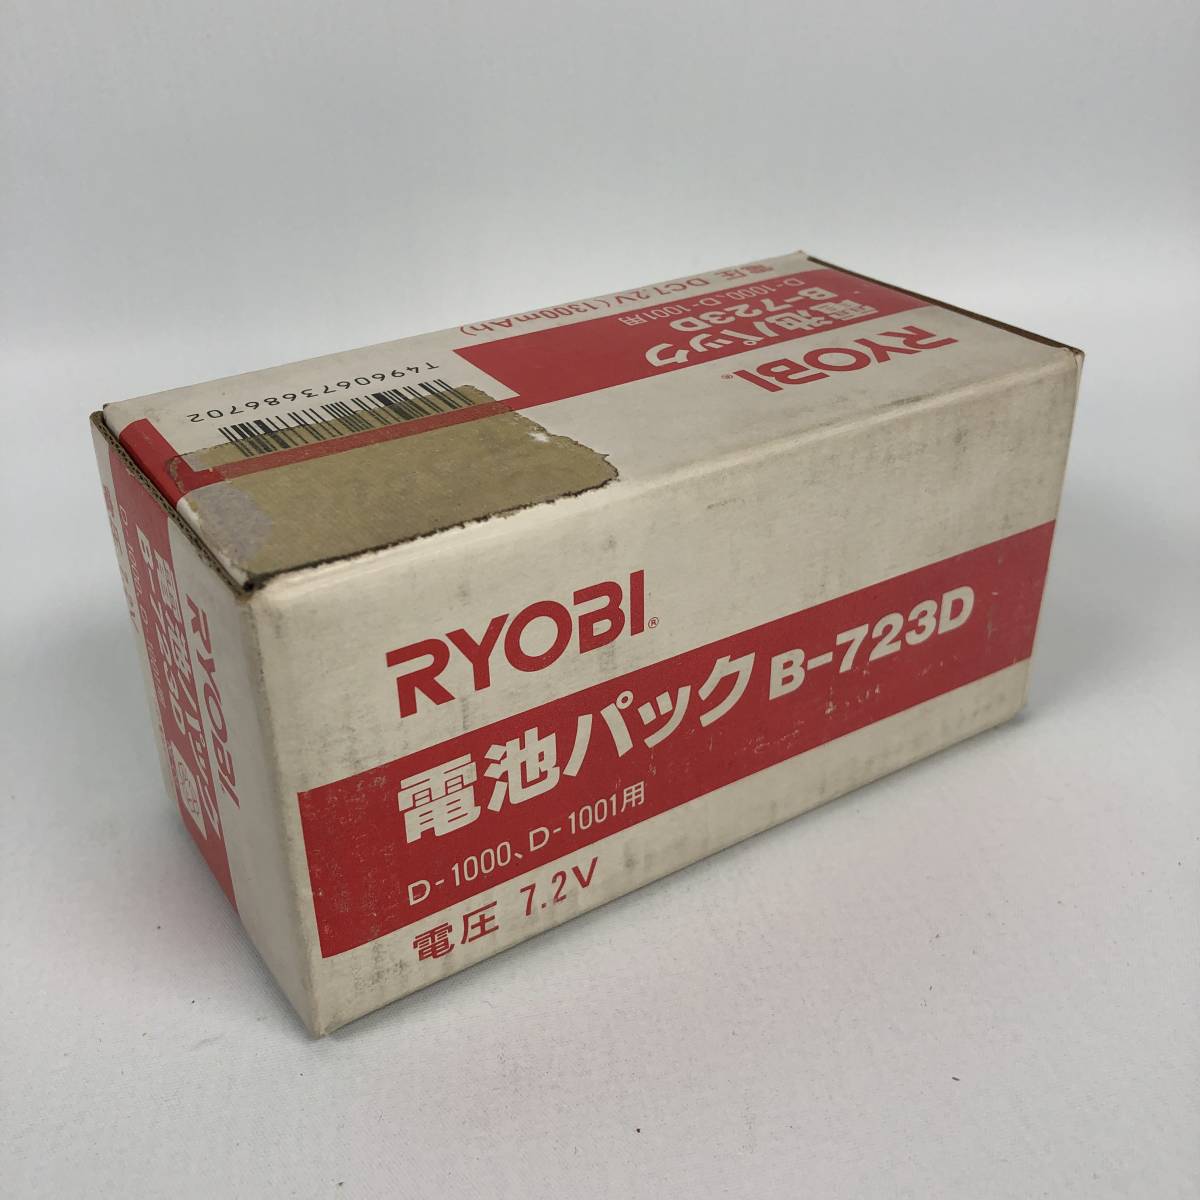 新品未使用 RYOBI 電池パック B-723D 7.2v 1300mAh バッテリーの画像1